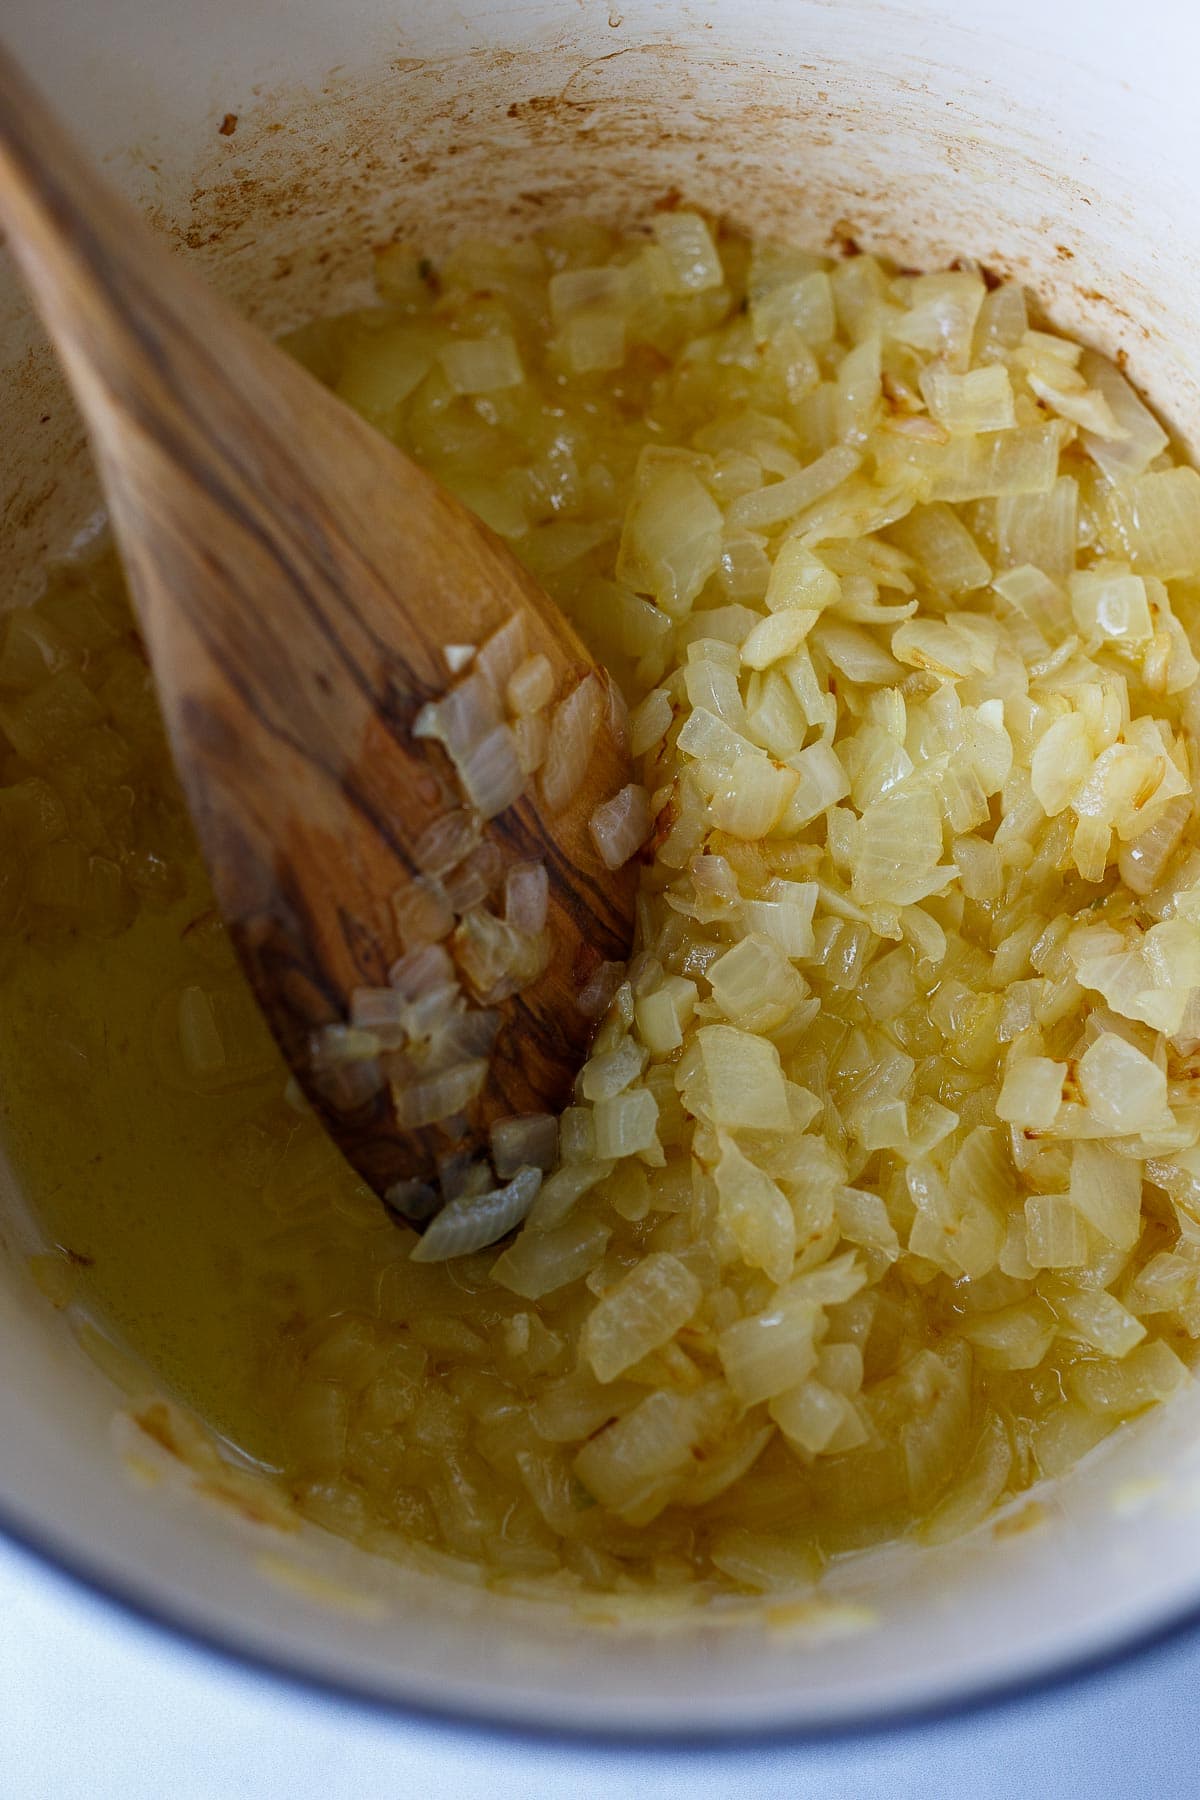 Sautéed onions in a pot.